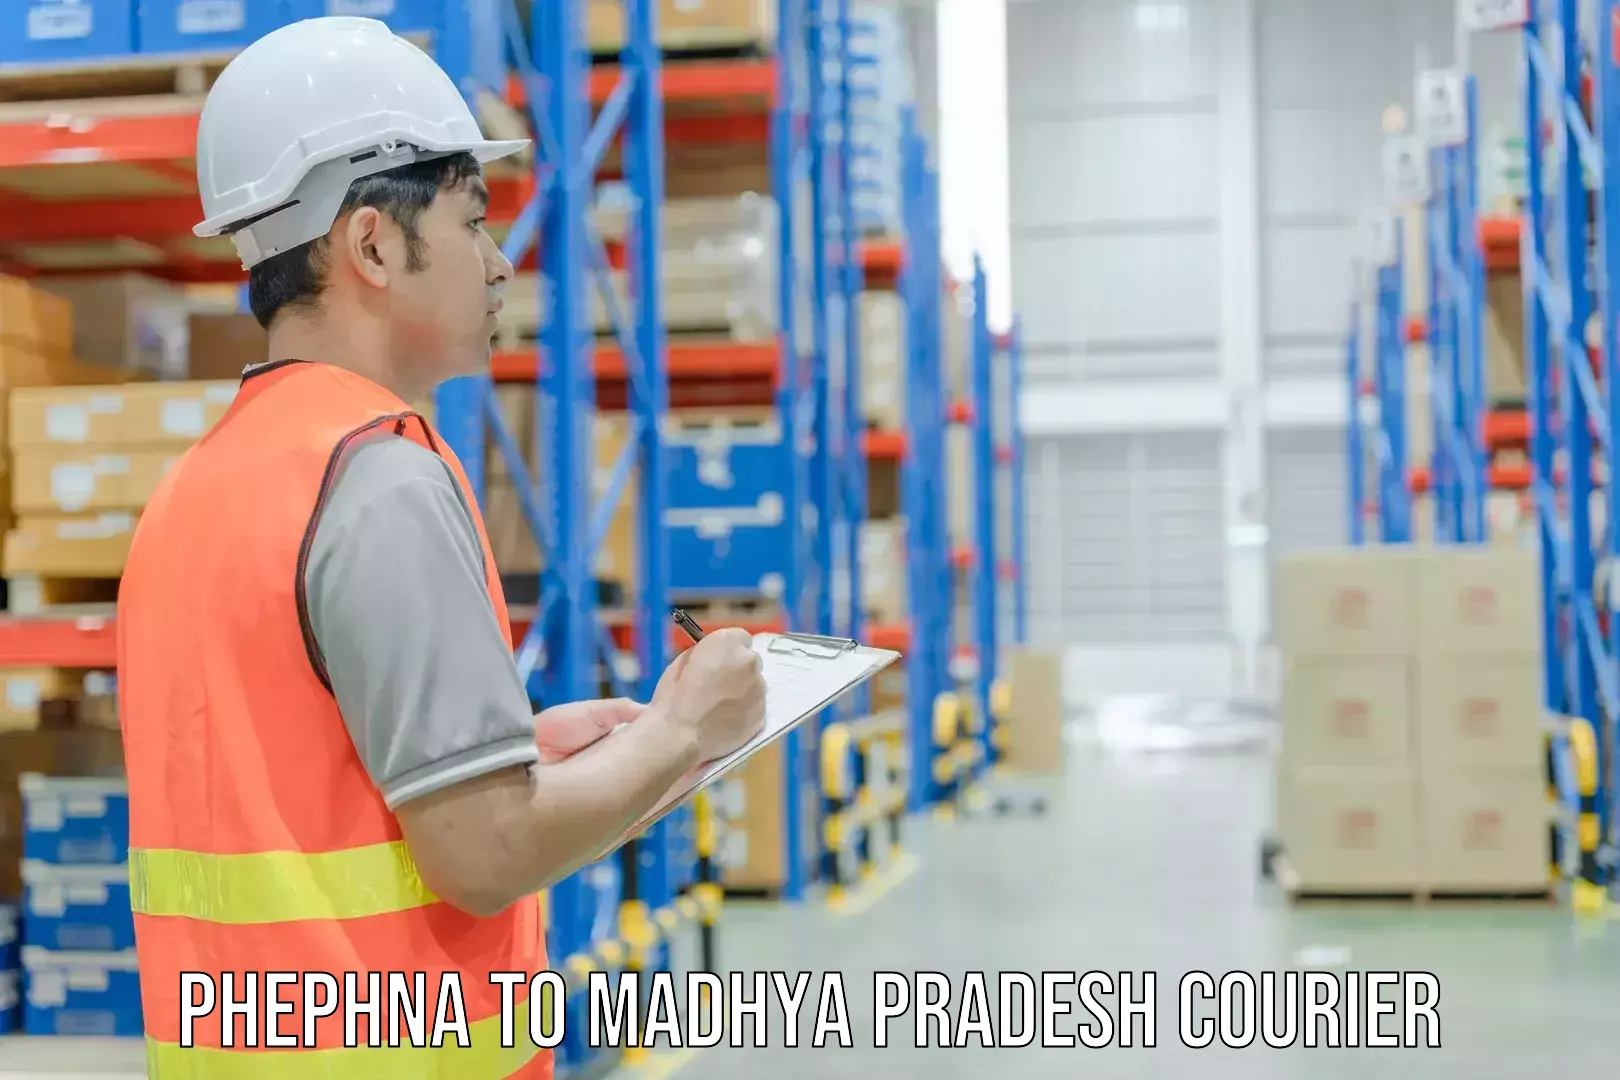 Optimized courier strategies Phephna to Madhya Pradesh